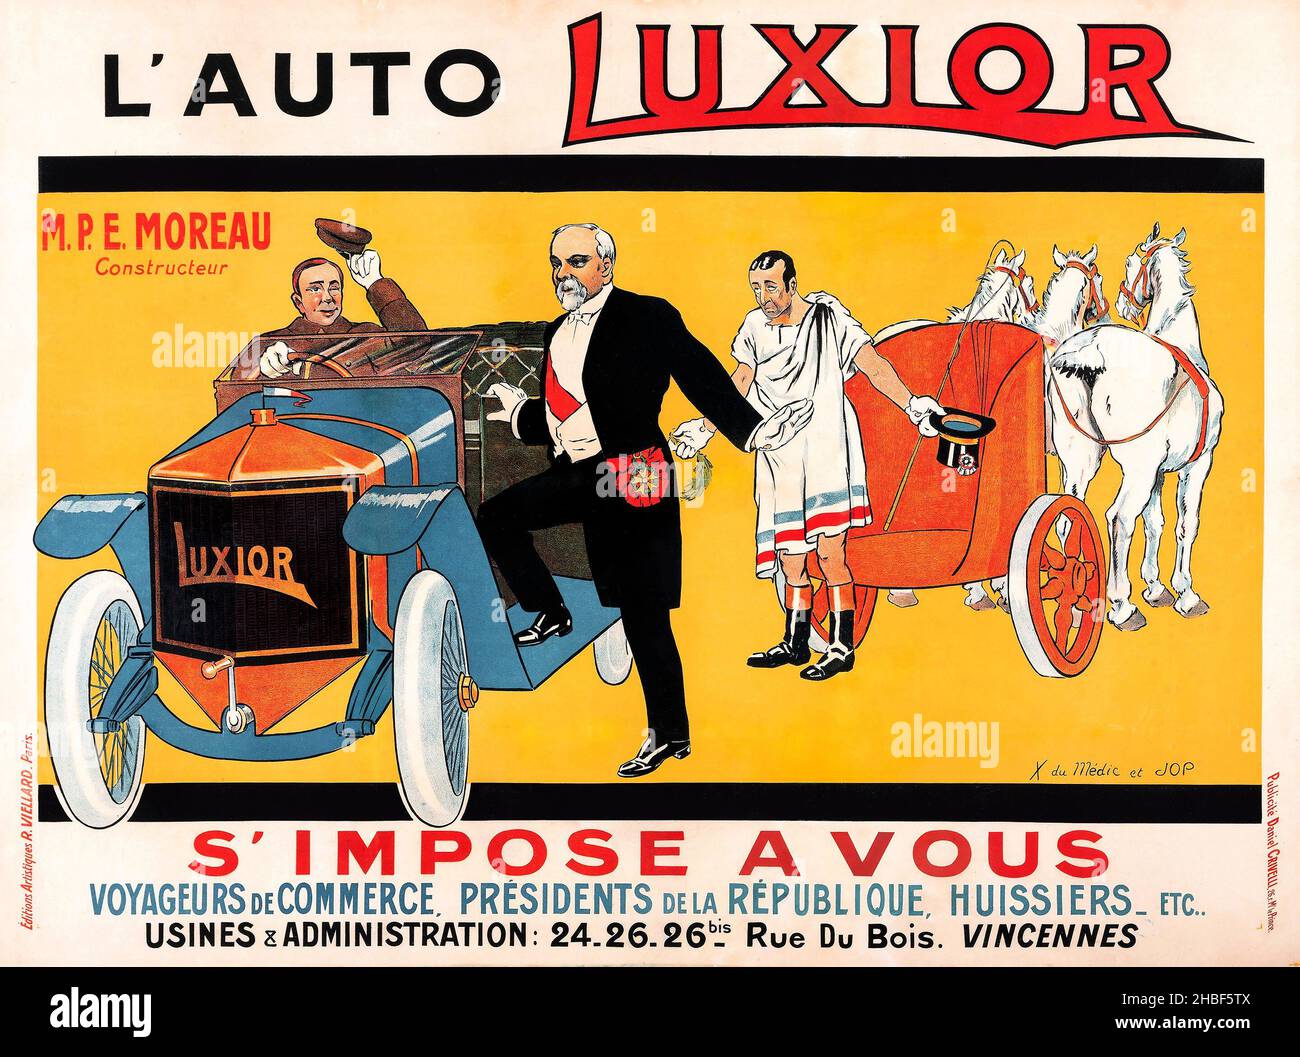 Cartel Vintage del coche / cartel del motor - L'Auto luxior (c. 1912). Publicidad Francesa Grande. M.P.E. Moreau. Foto de stock